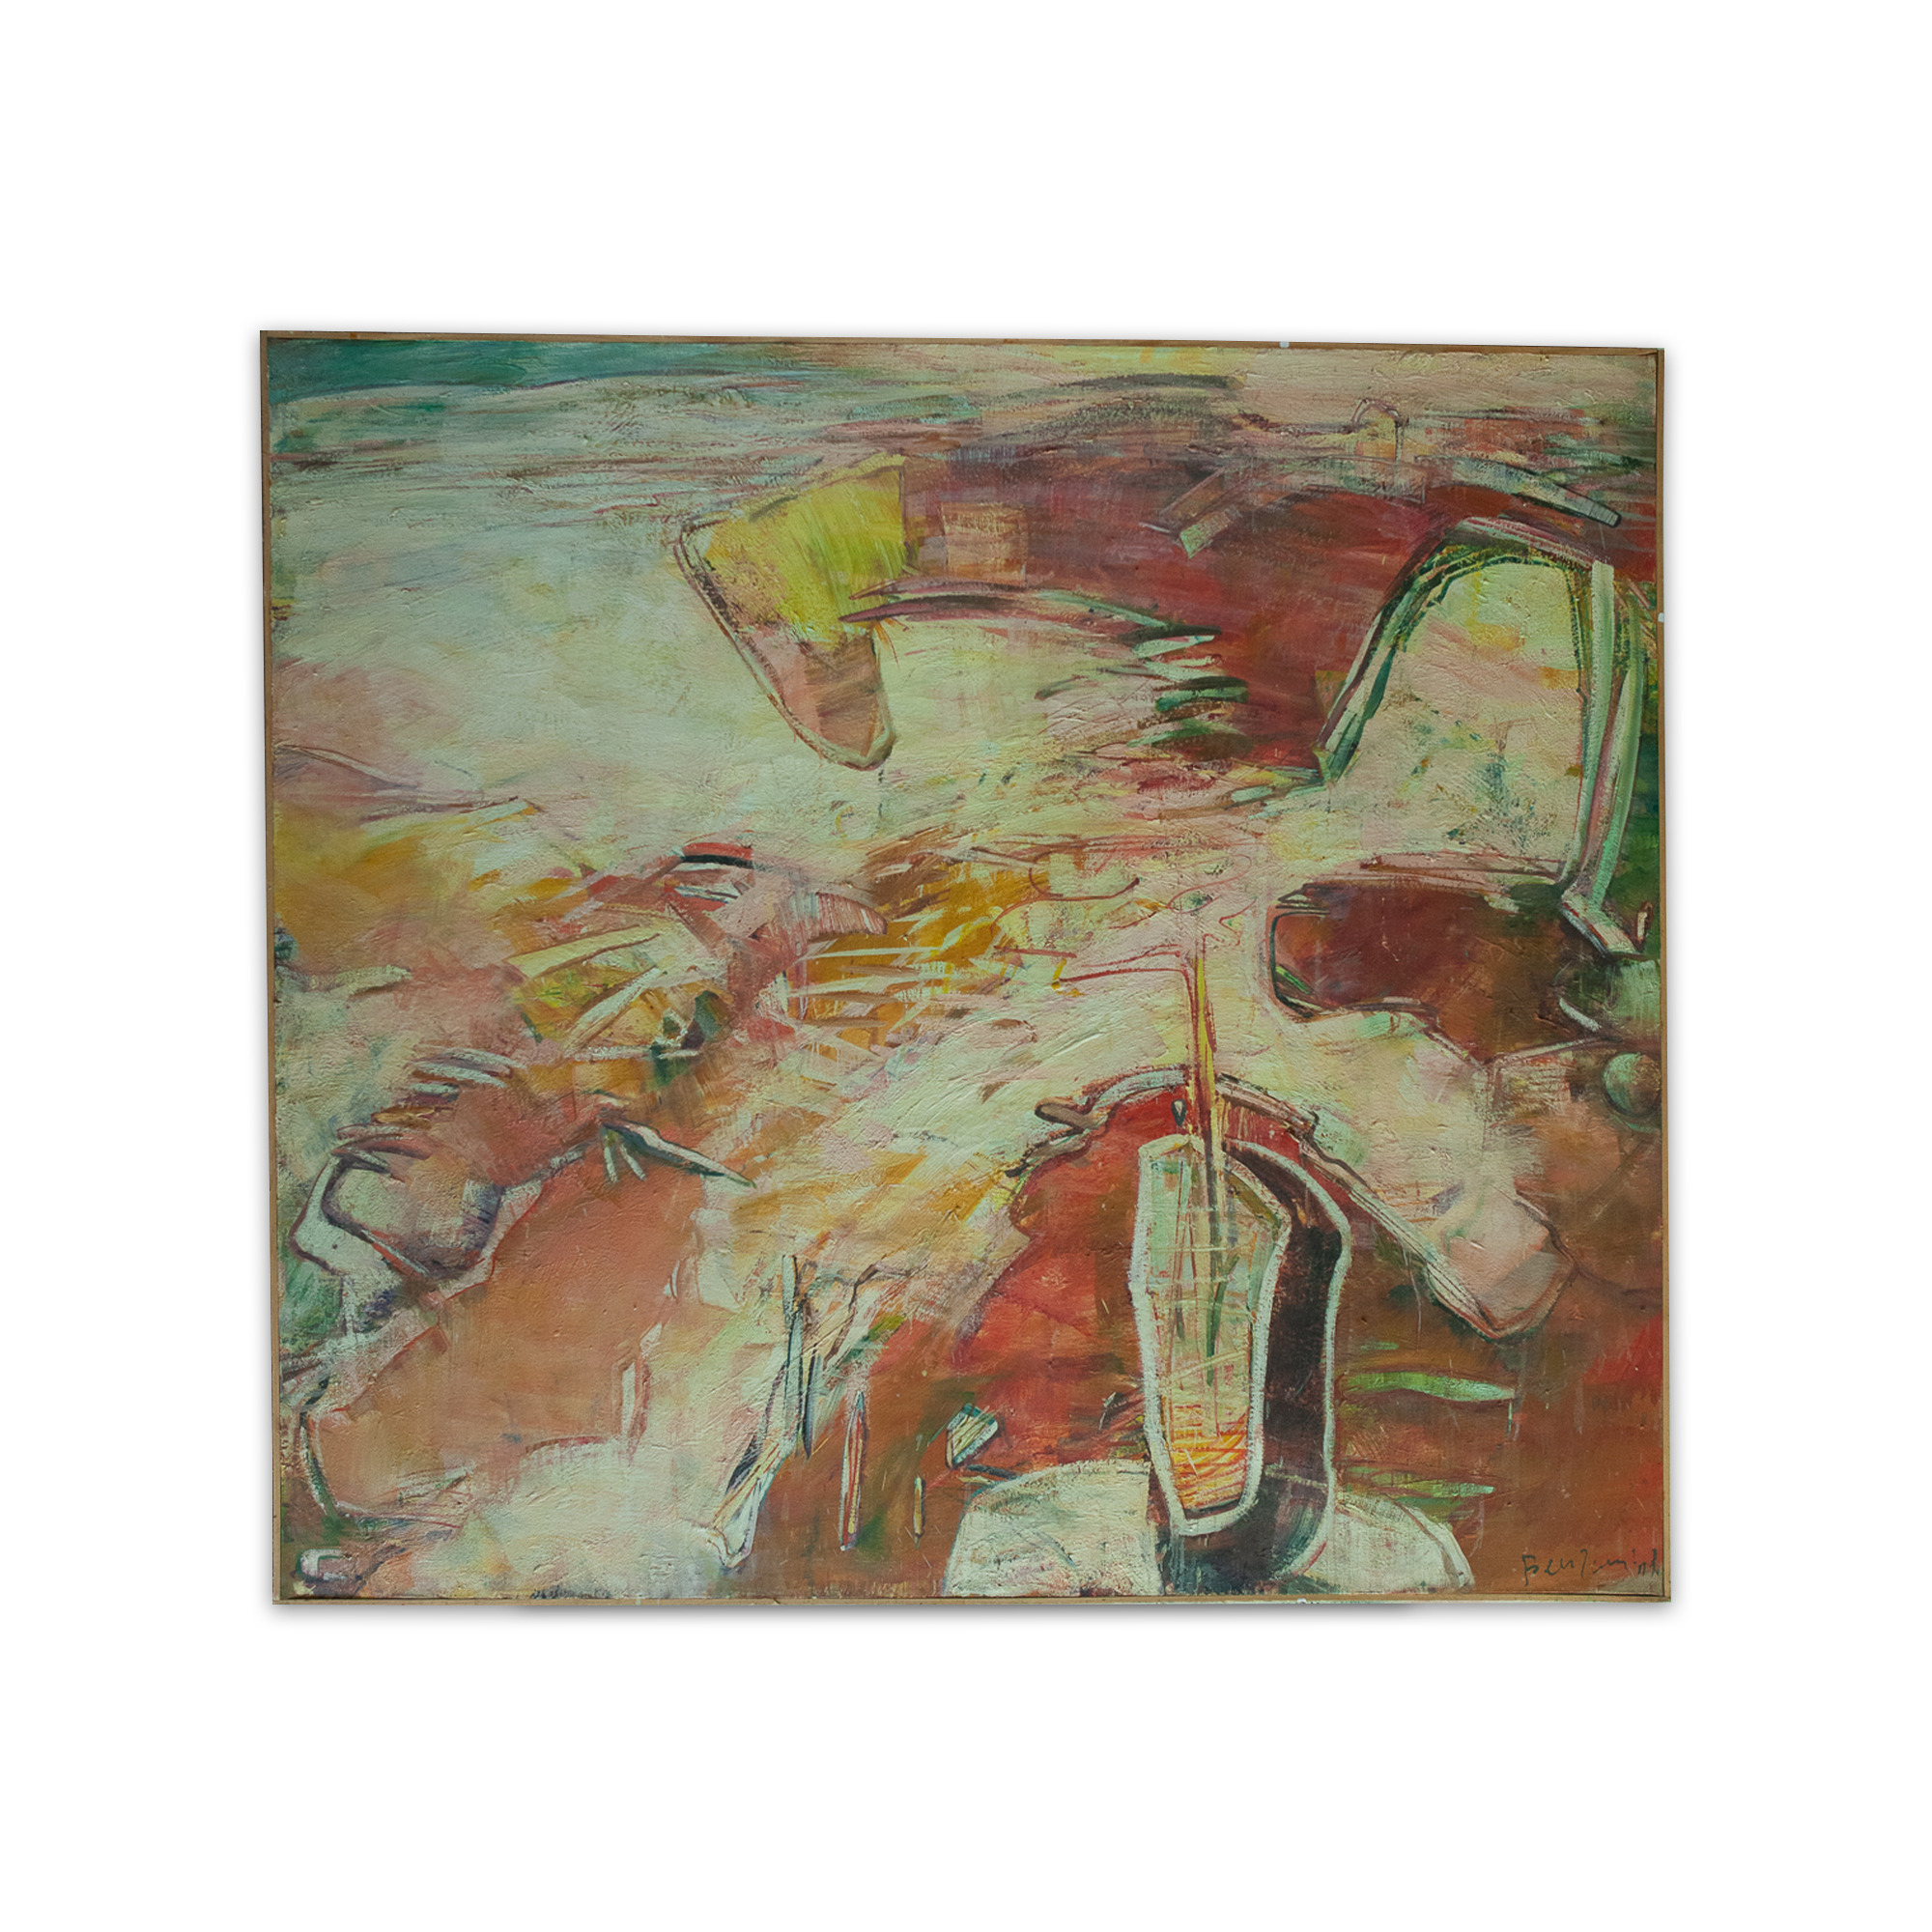 Limonadeglas - peinture à l'huile - 1992 - 1.80 x 2.00m